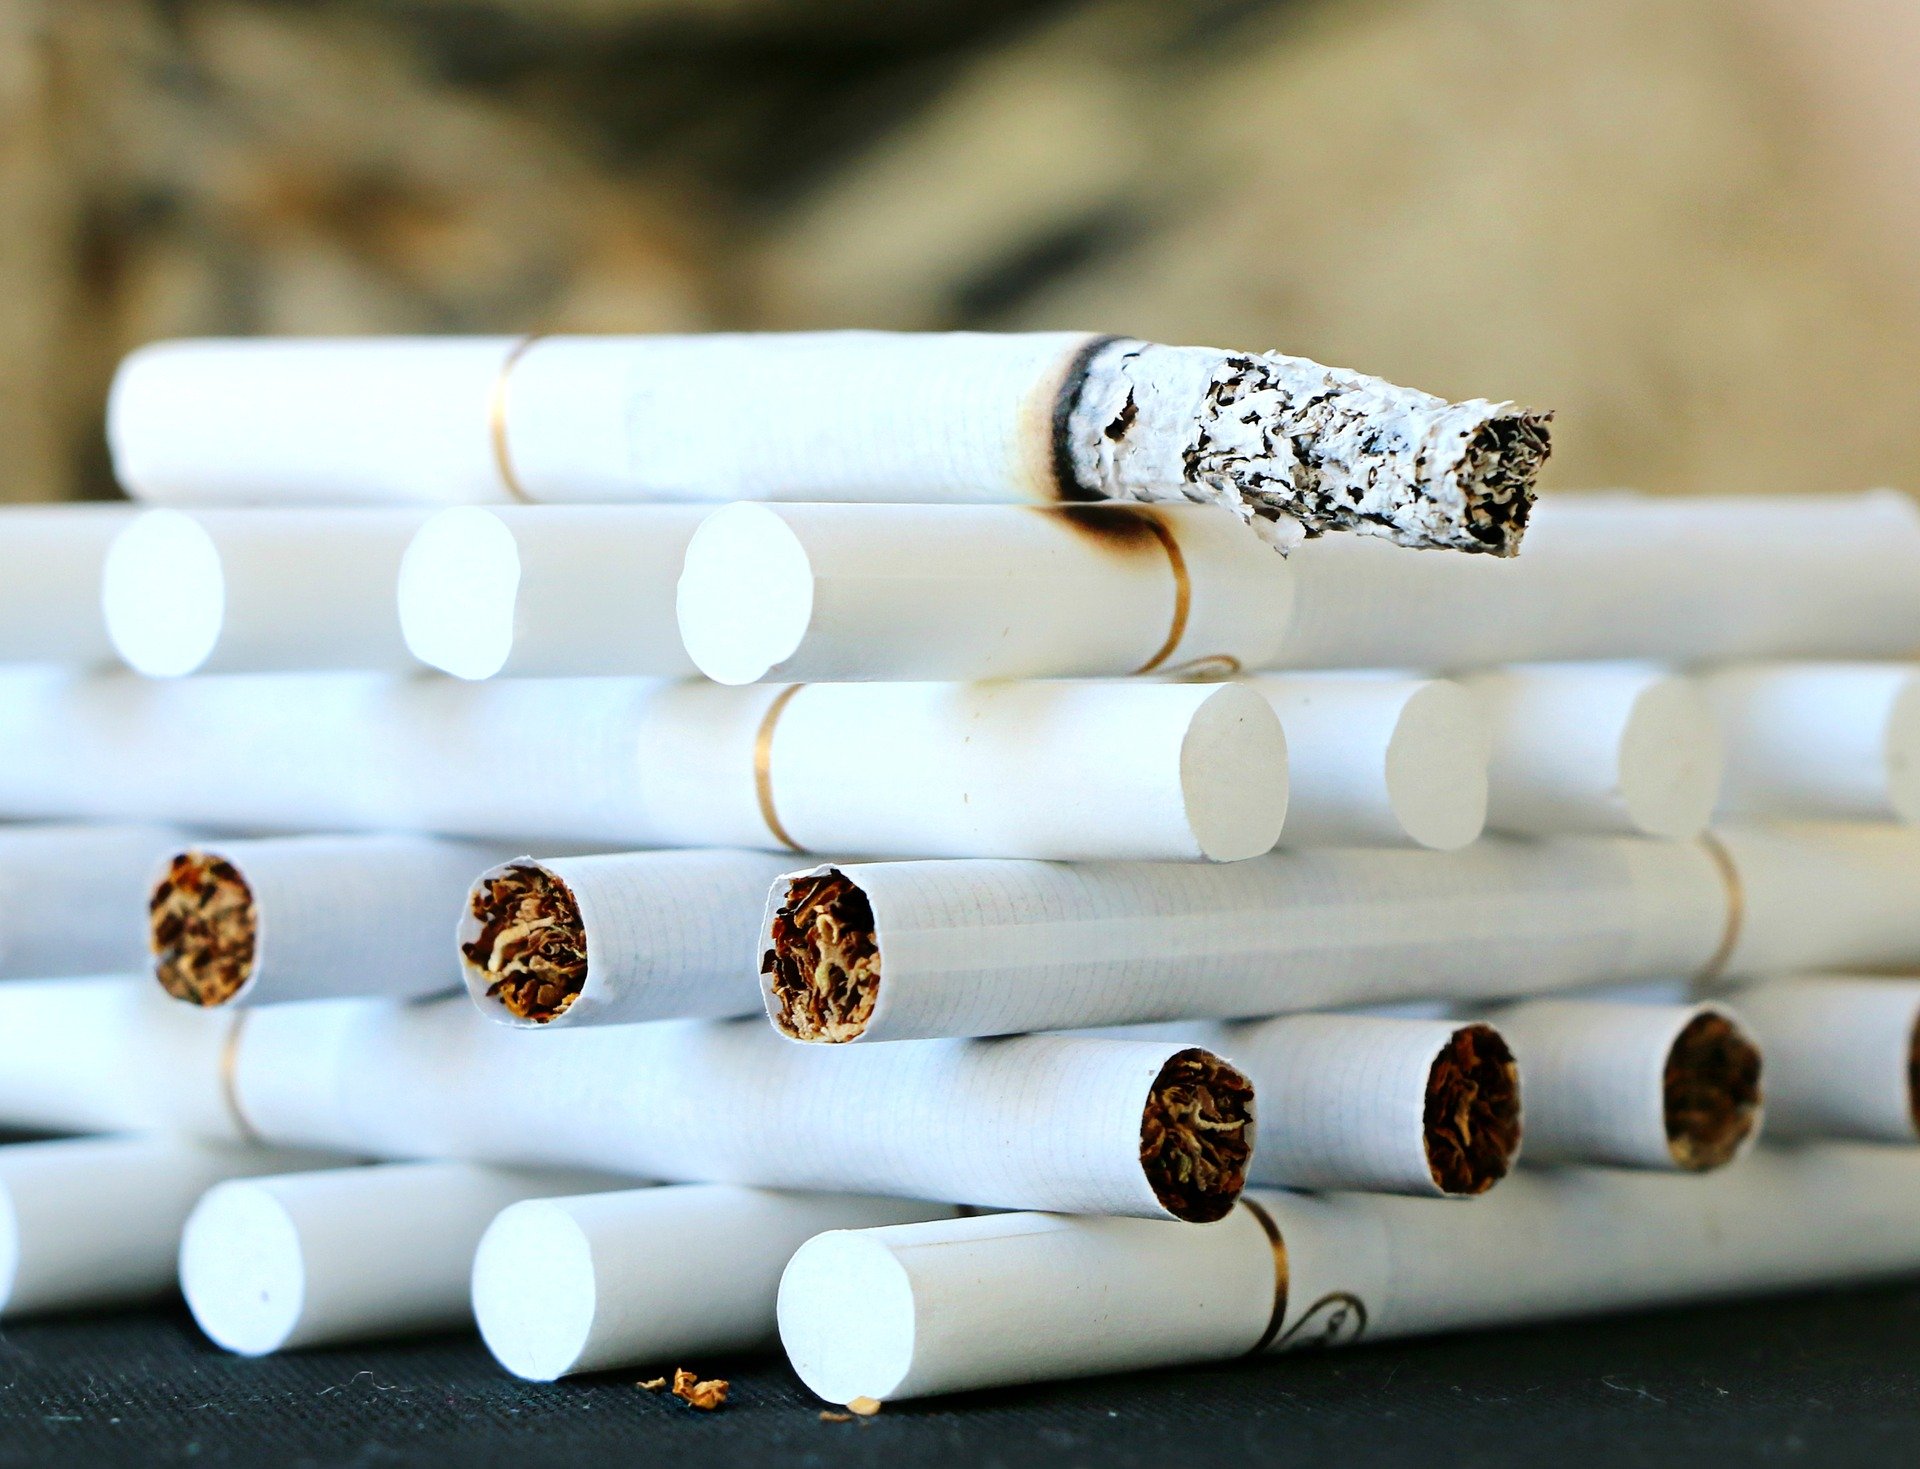 cigarette 1642232 1920.jpg?resize=1200,630 - Tabac : Une entreprise britannique offre des congés en plus pour les employés non-fumeurs